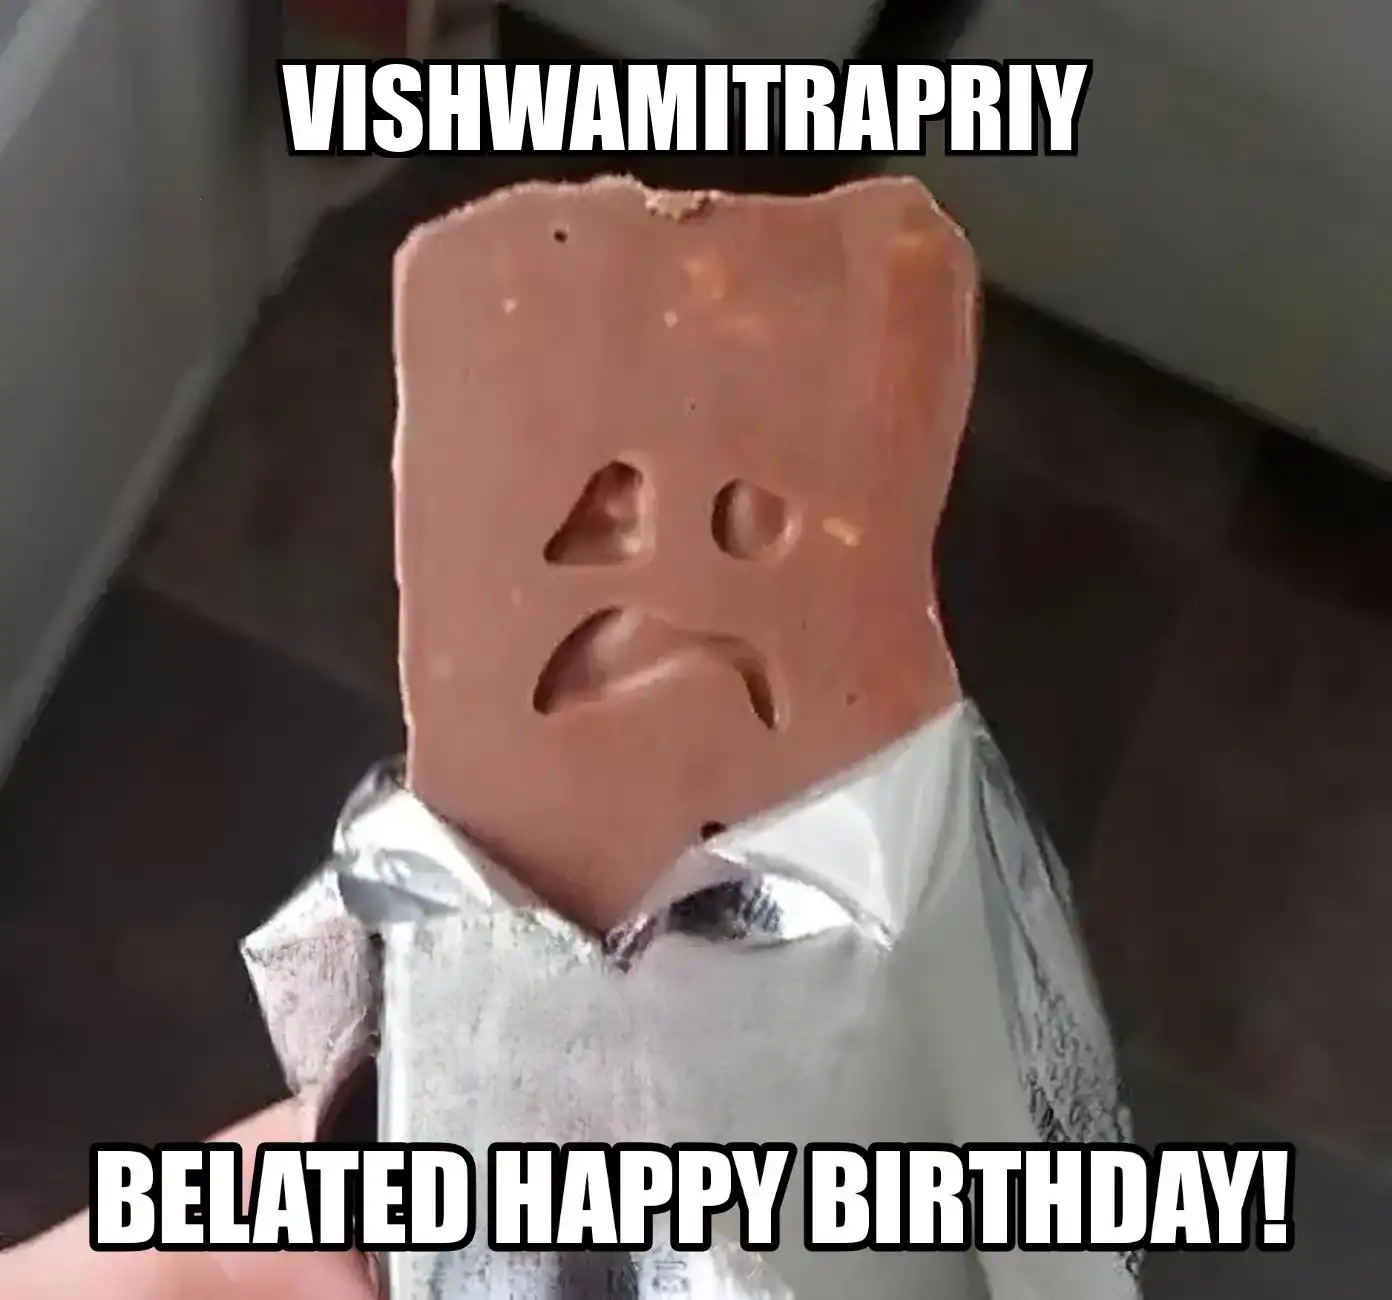 Happy Birthday Vishwamitrapriy Belated Happy Birthday Meme